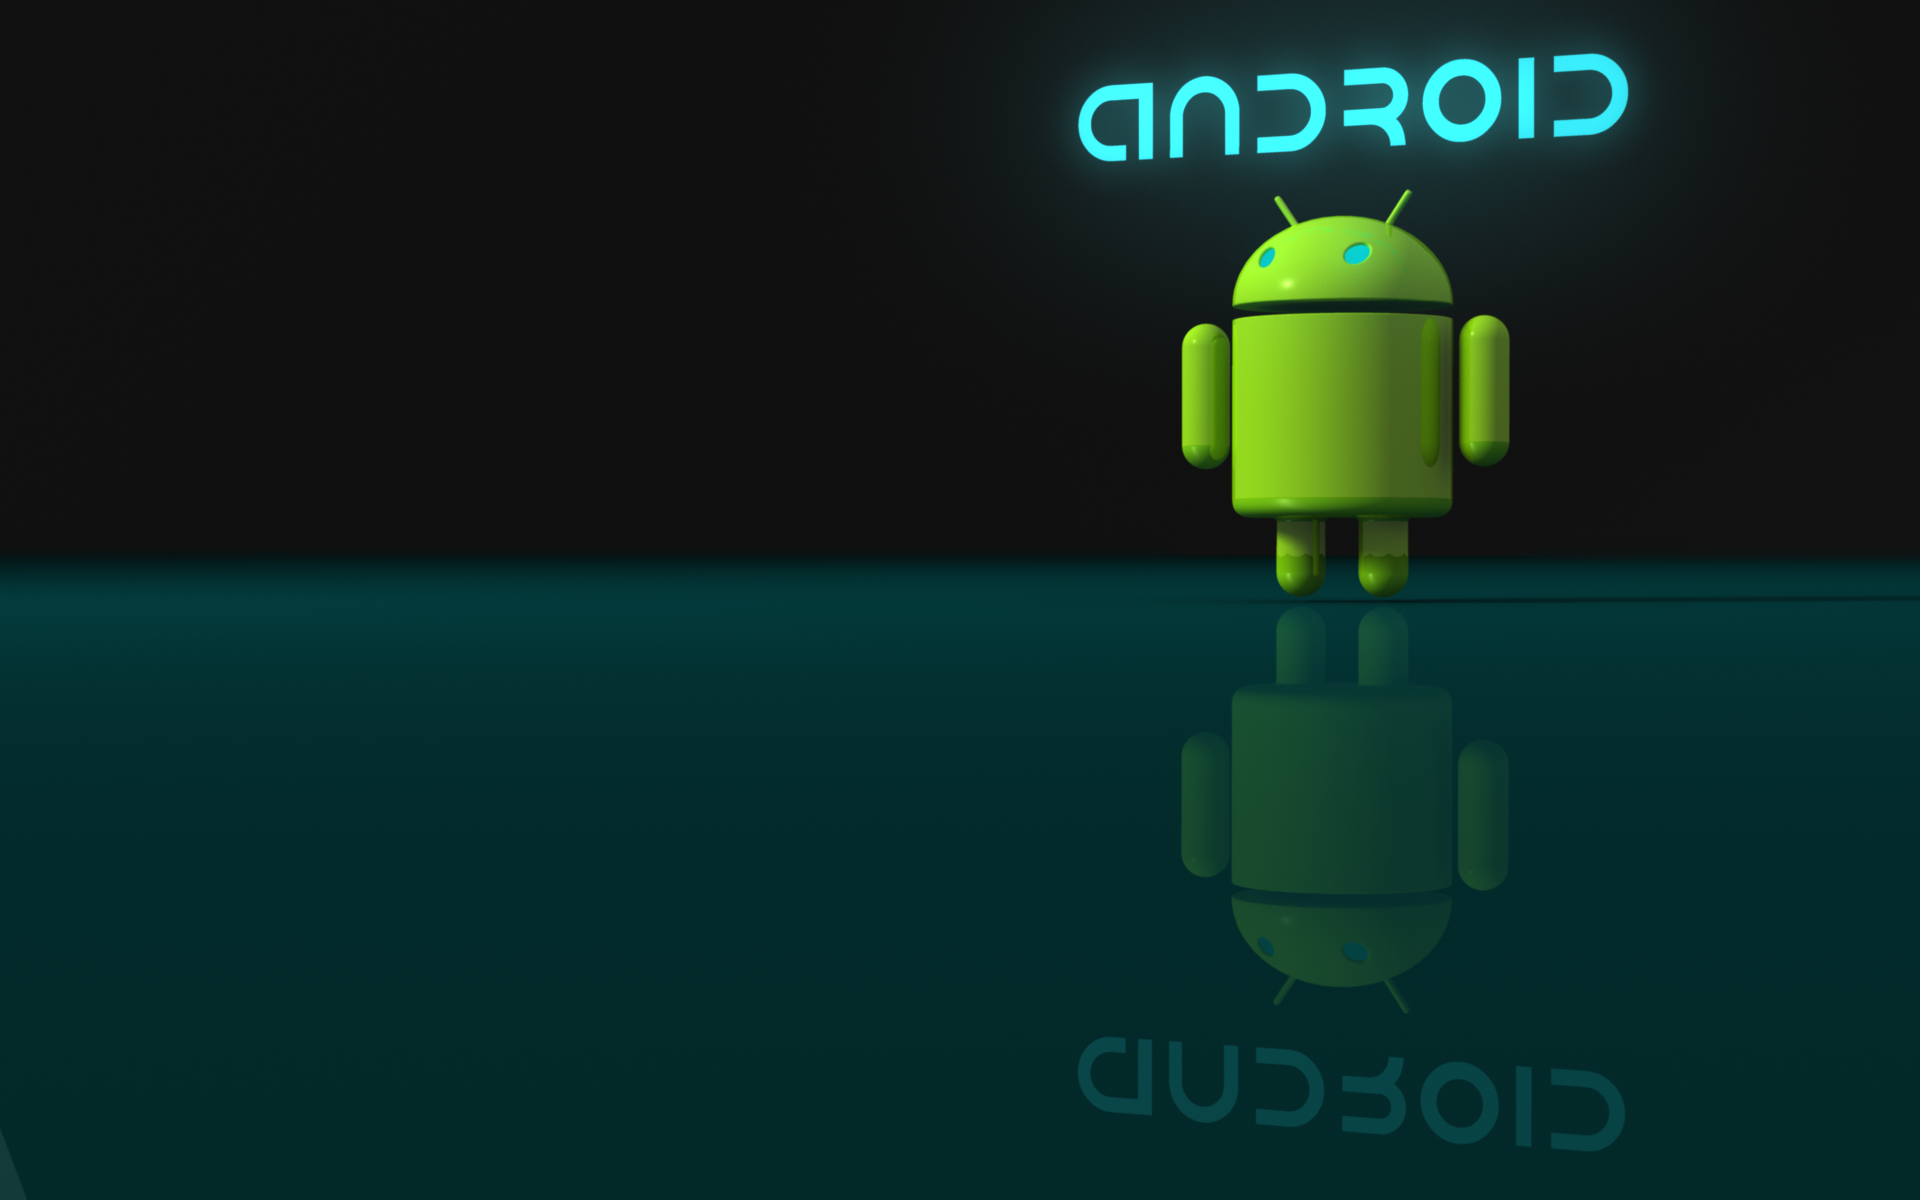 Gambar Android Hd